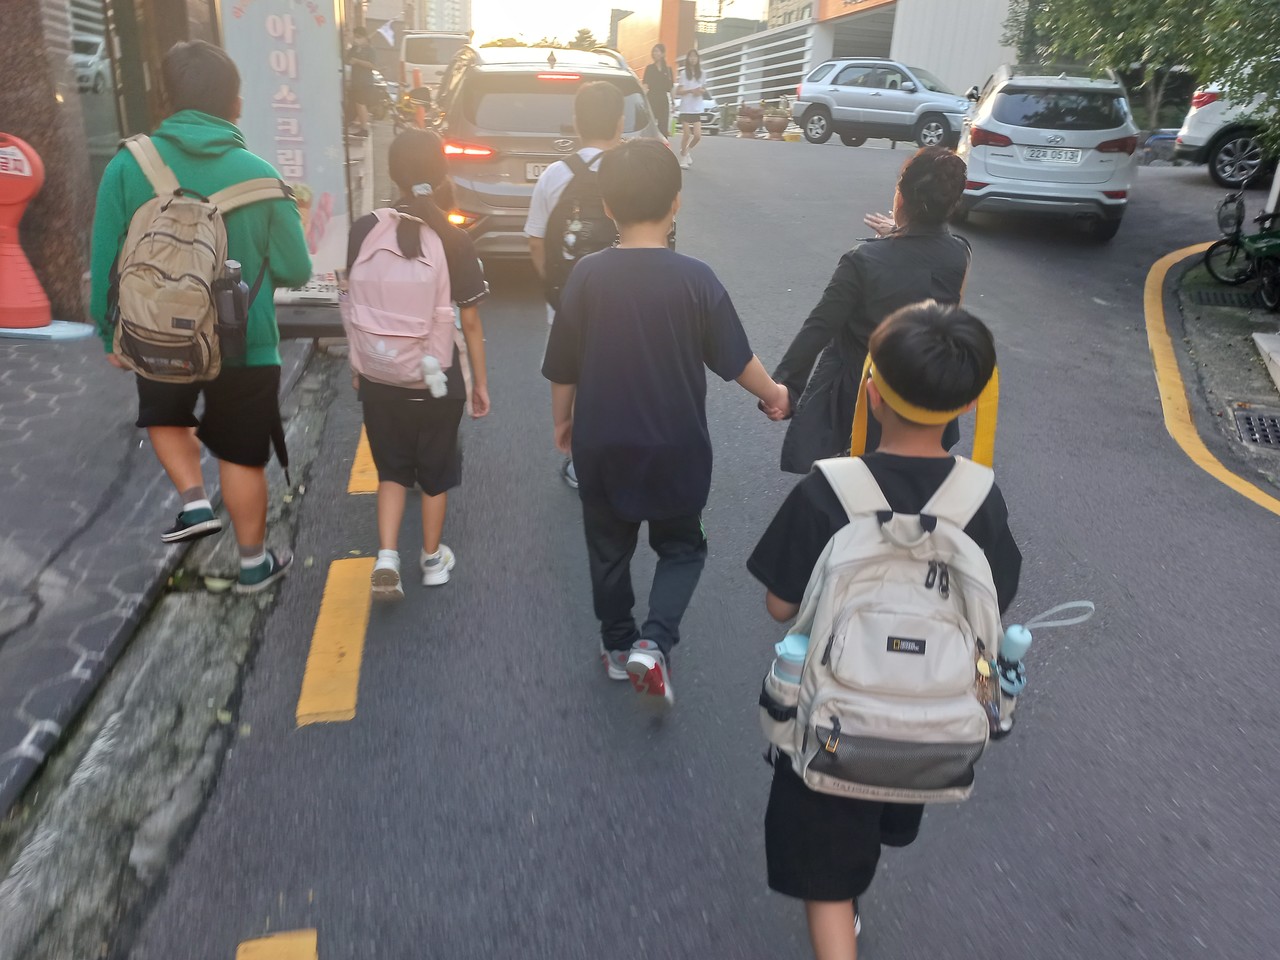 문석영 씨는 손을 잡고 아이들과 도란도관 이야기 하면서 걷는 이 순간이 보람되다고 말한다. 